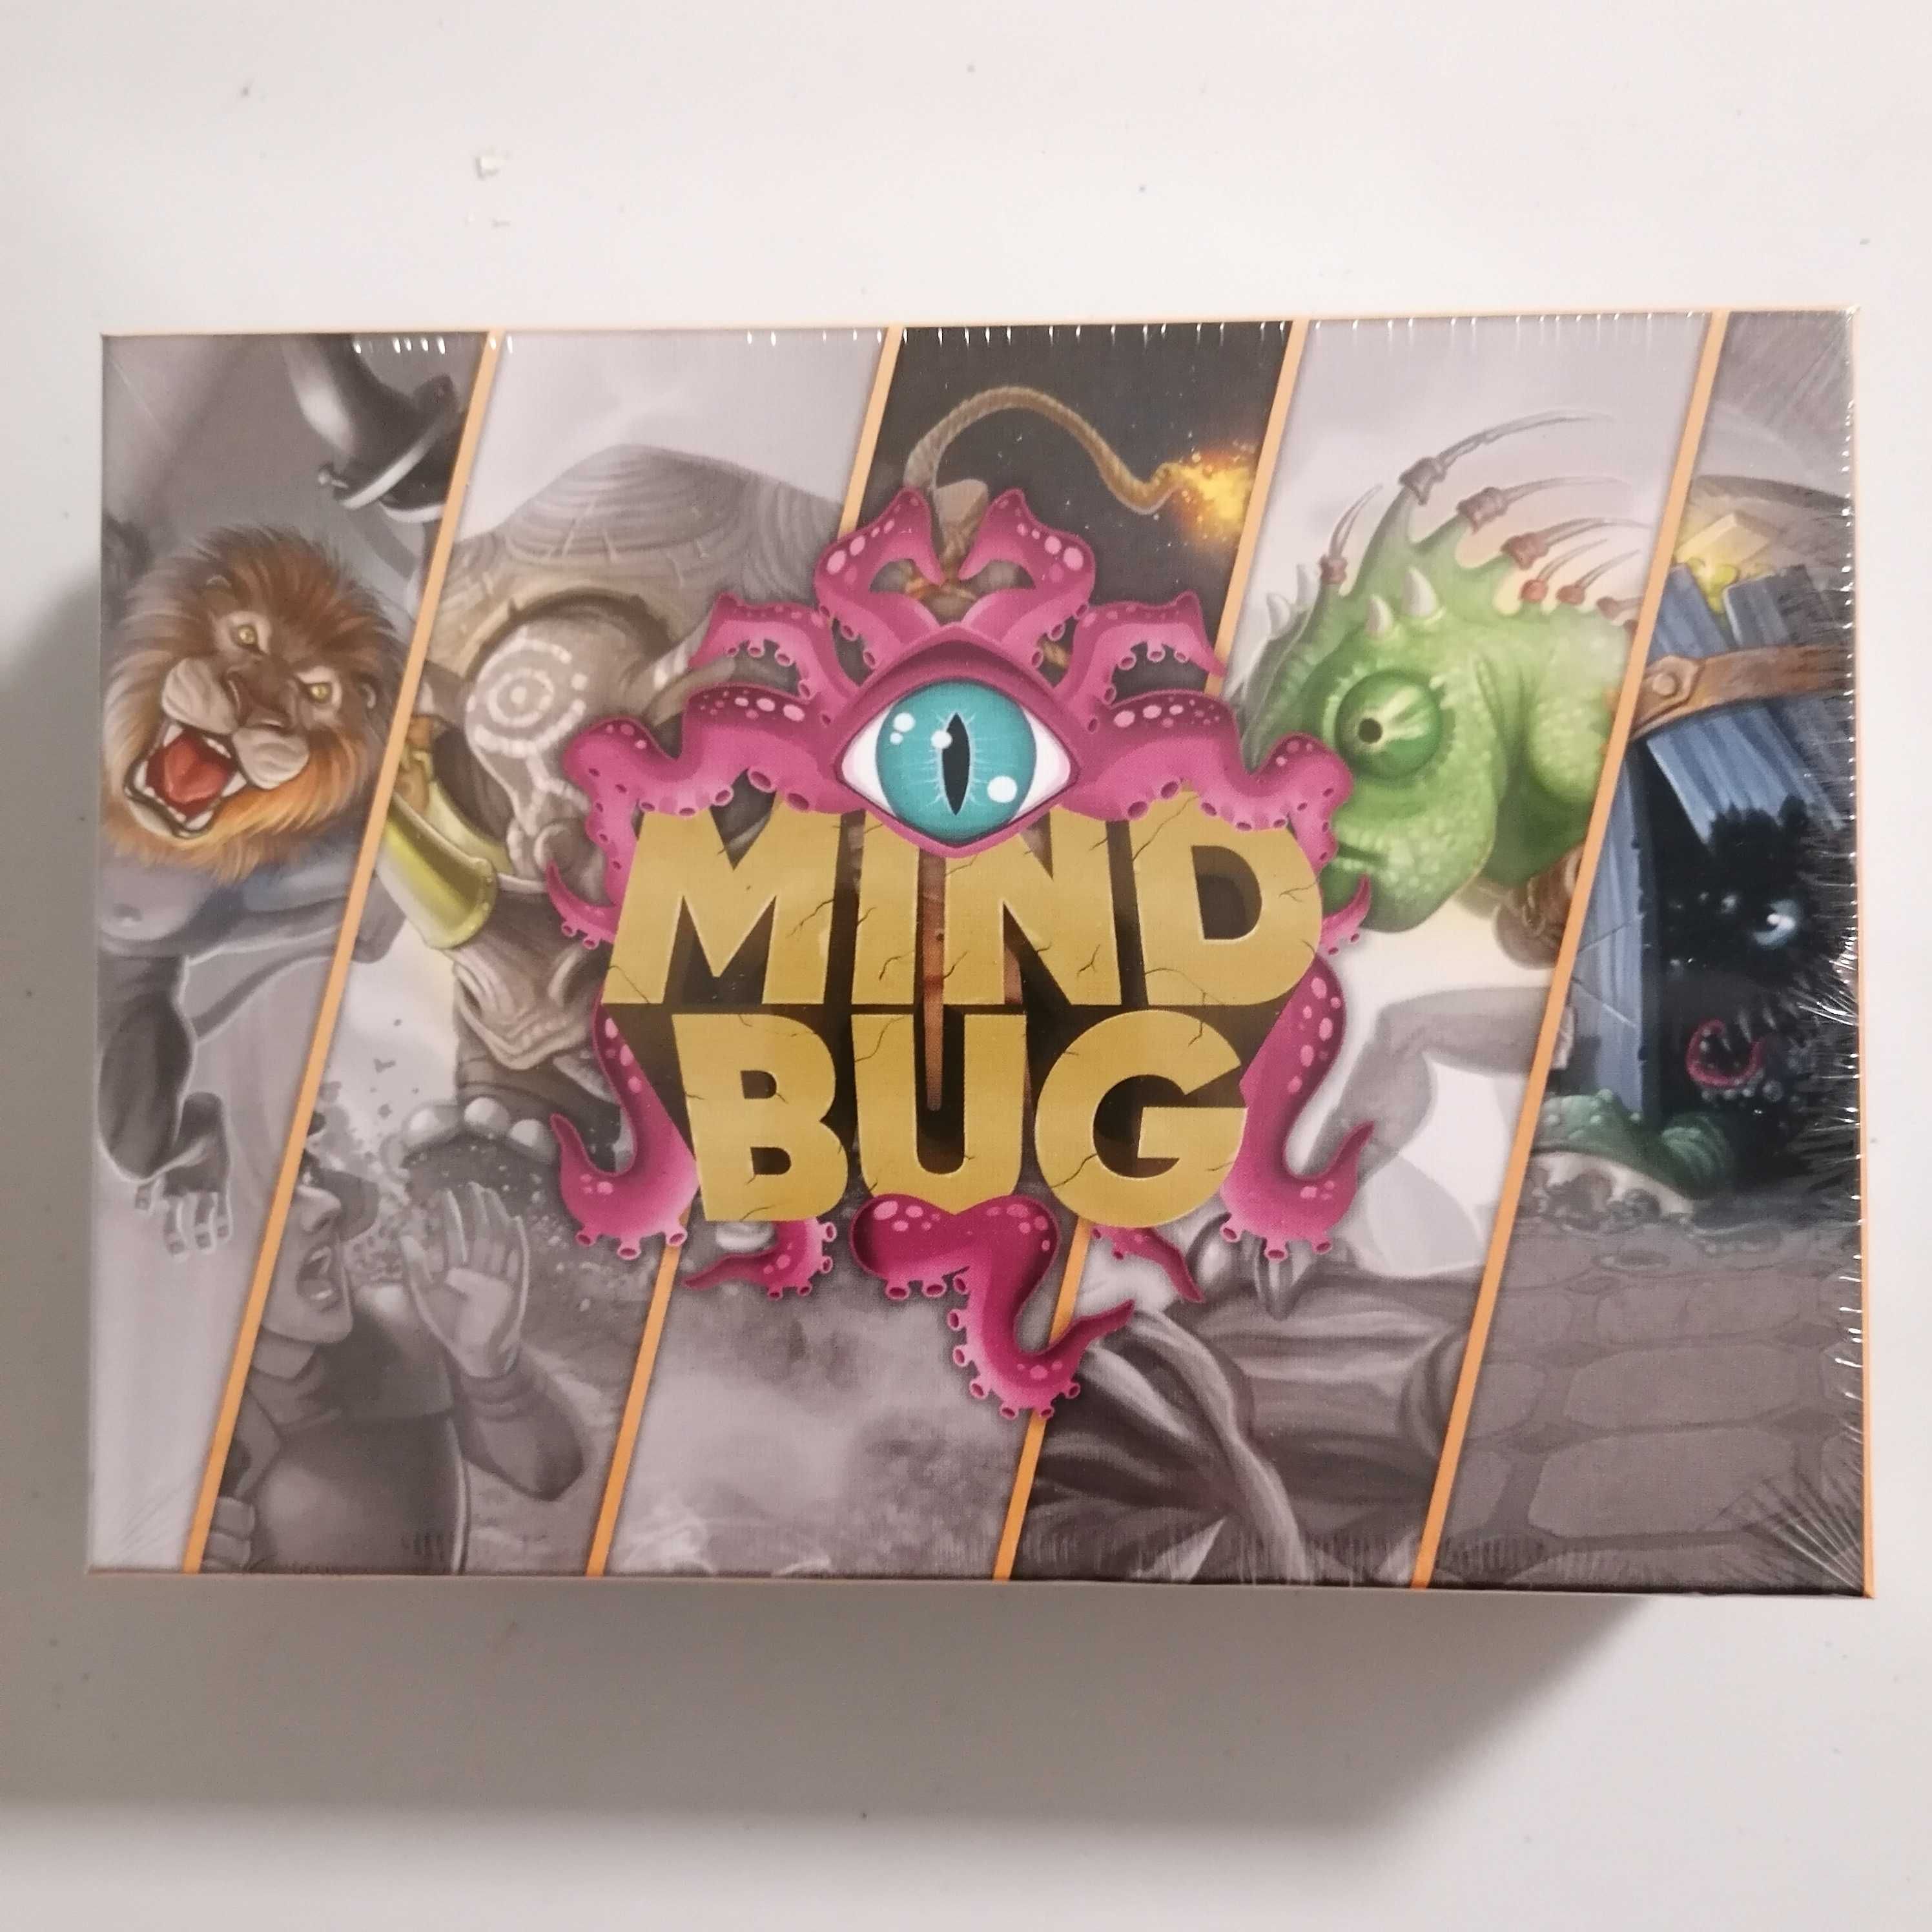 Mindbug: First Contact